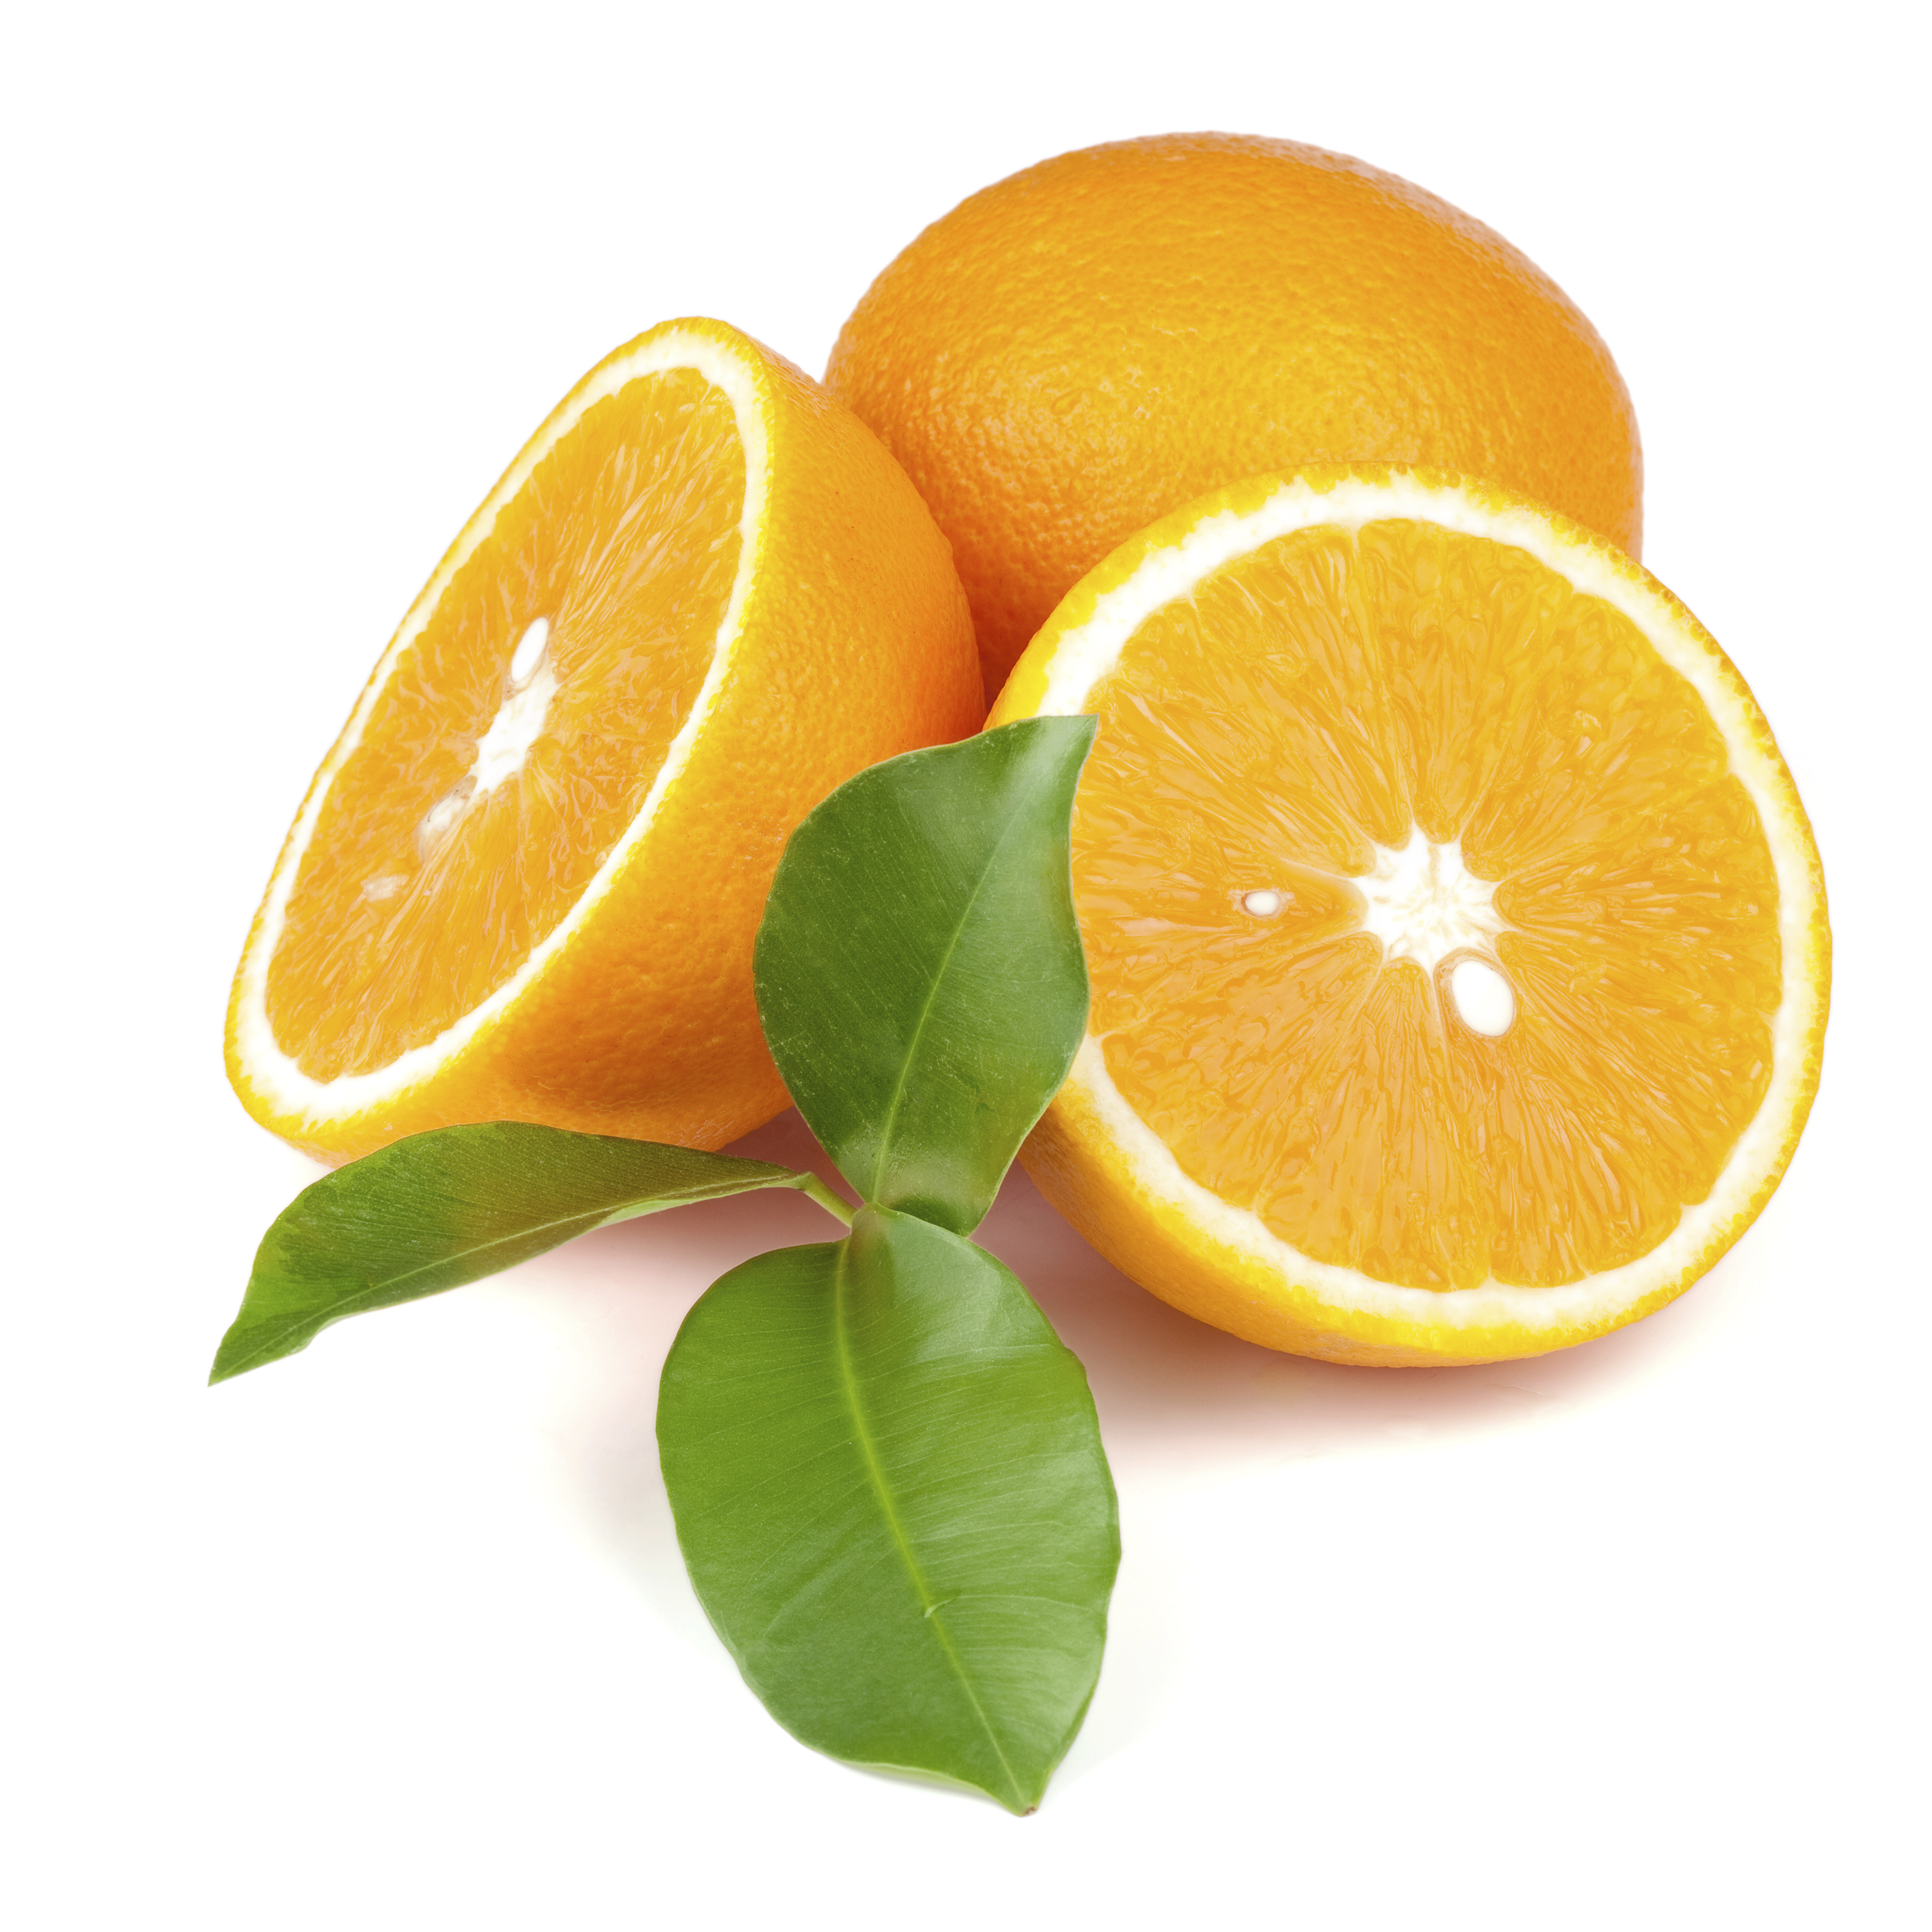 Oranges photo